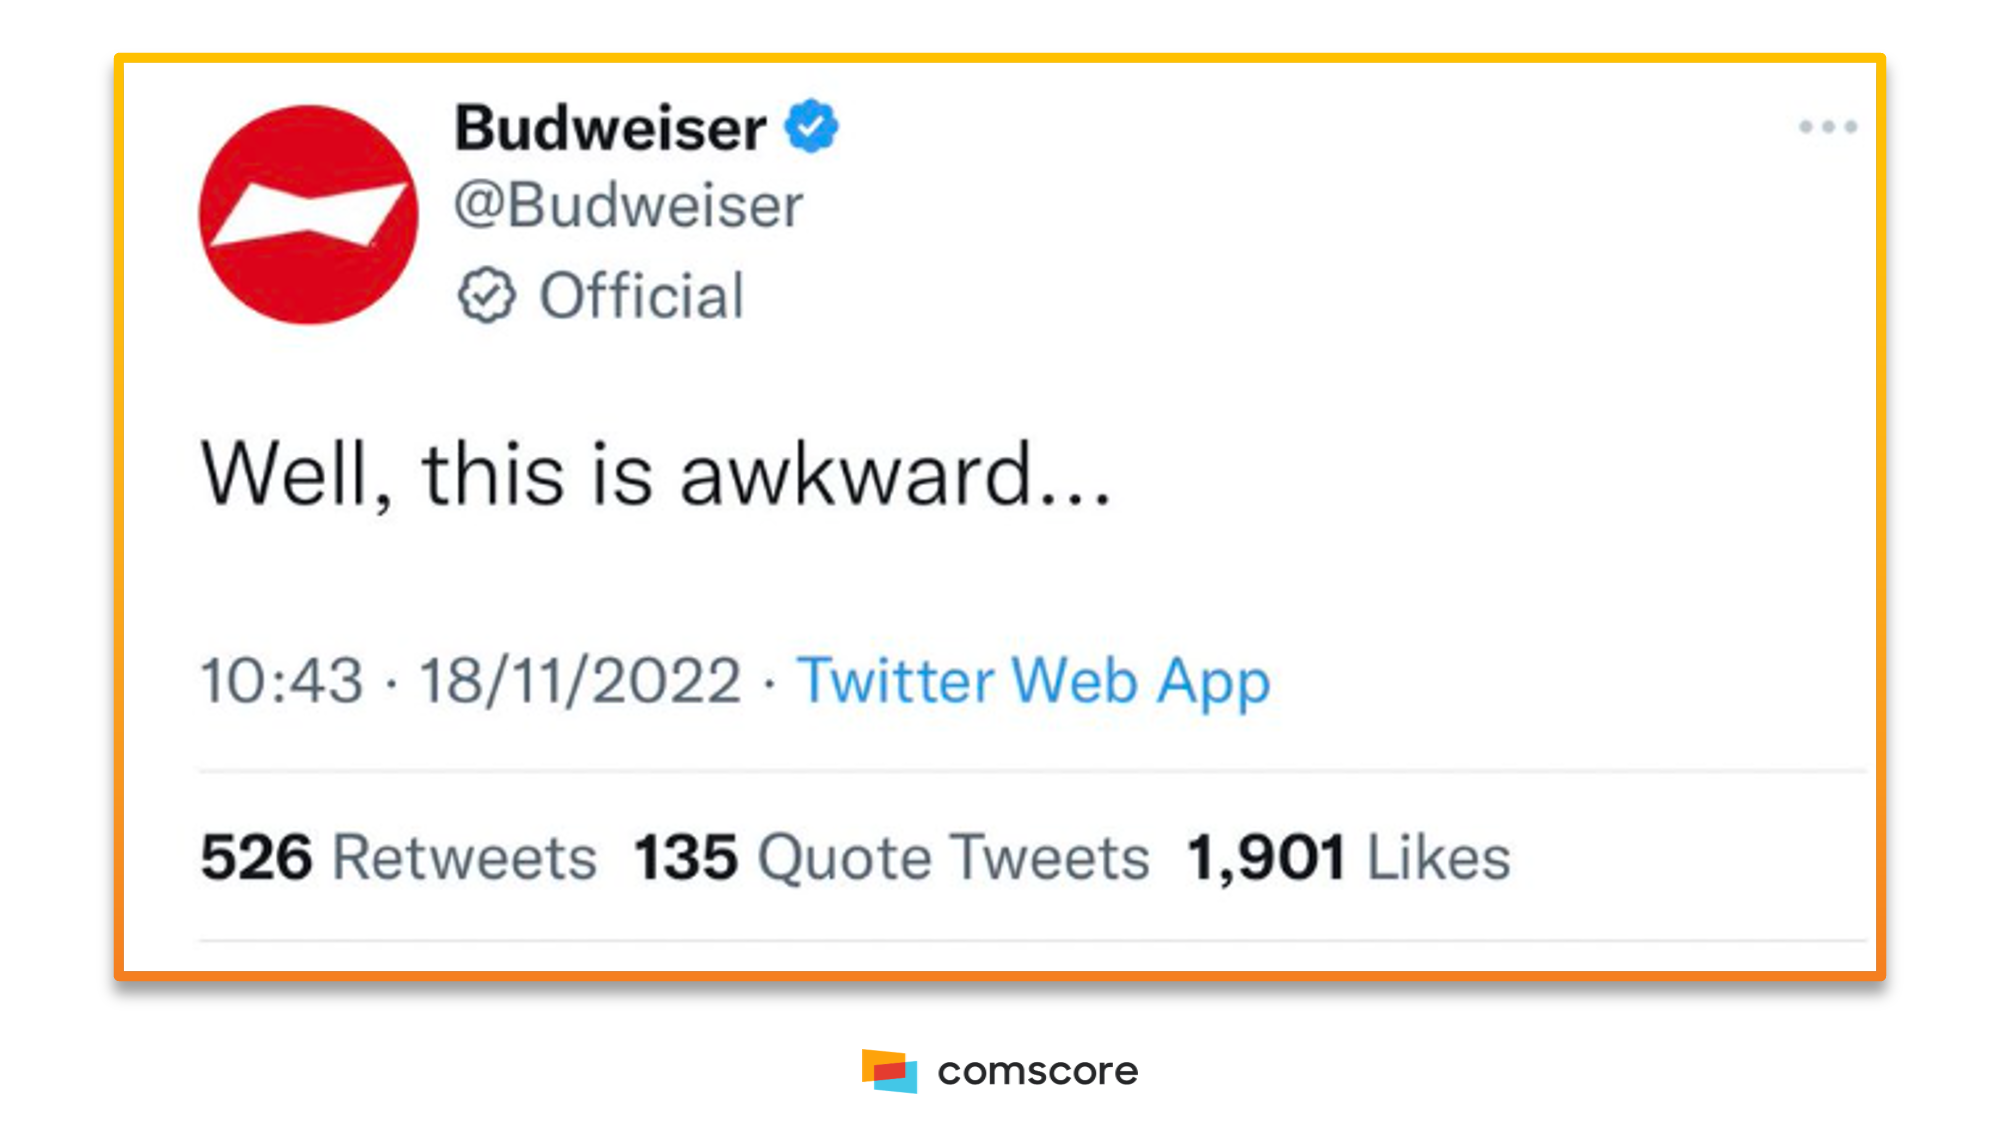 Budweiser's Tweet